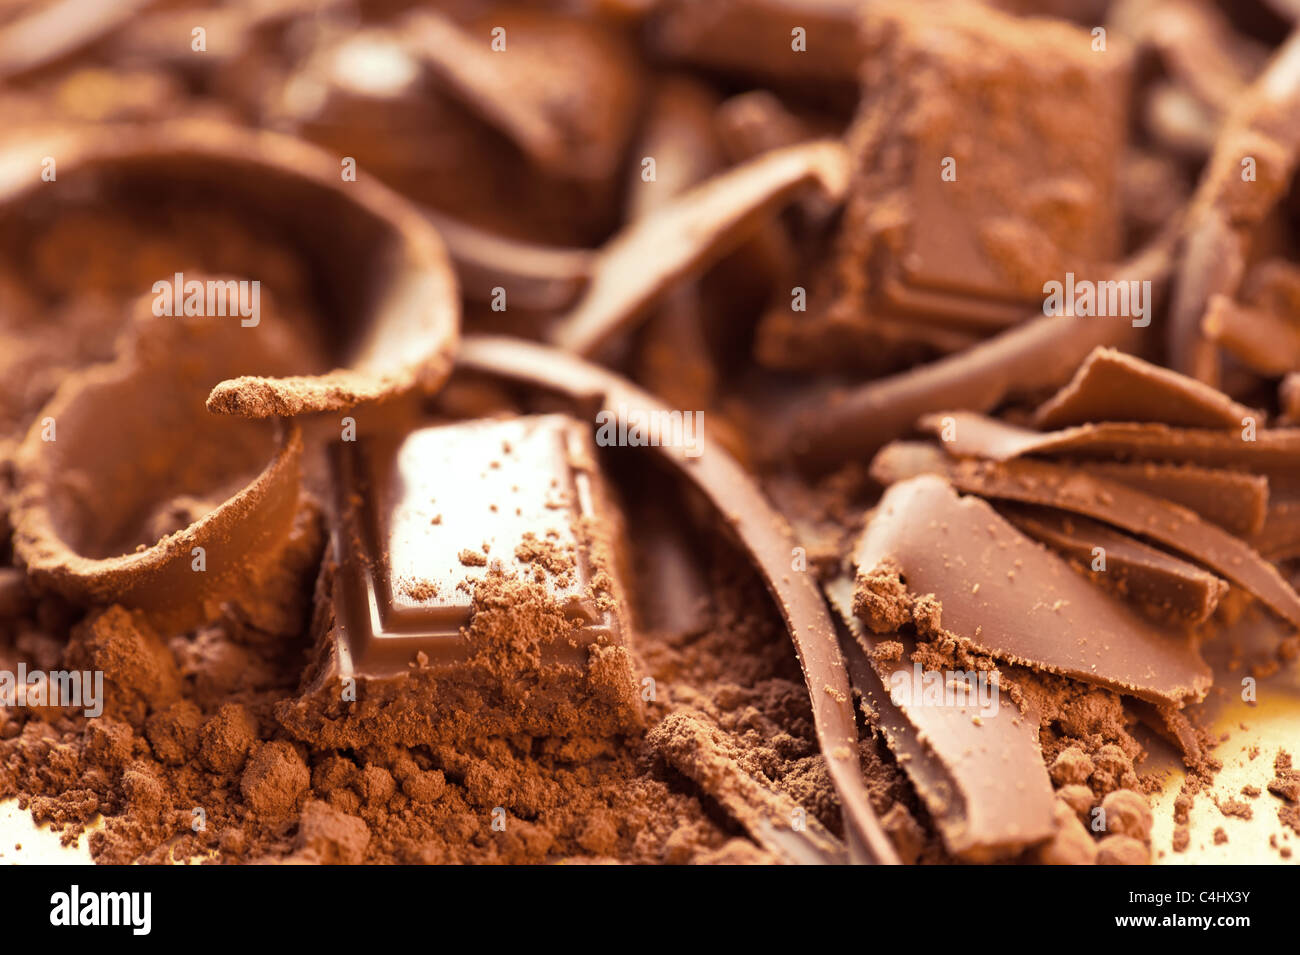 Fond chocolat. Bars et bandes de chocolat avec du cacao en poudre. Profondeur de champ Banque D'Images